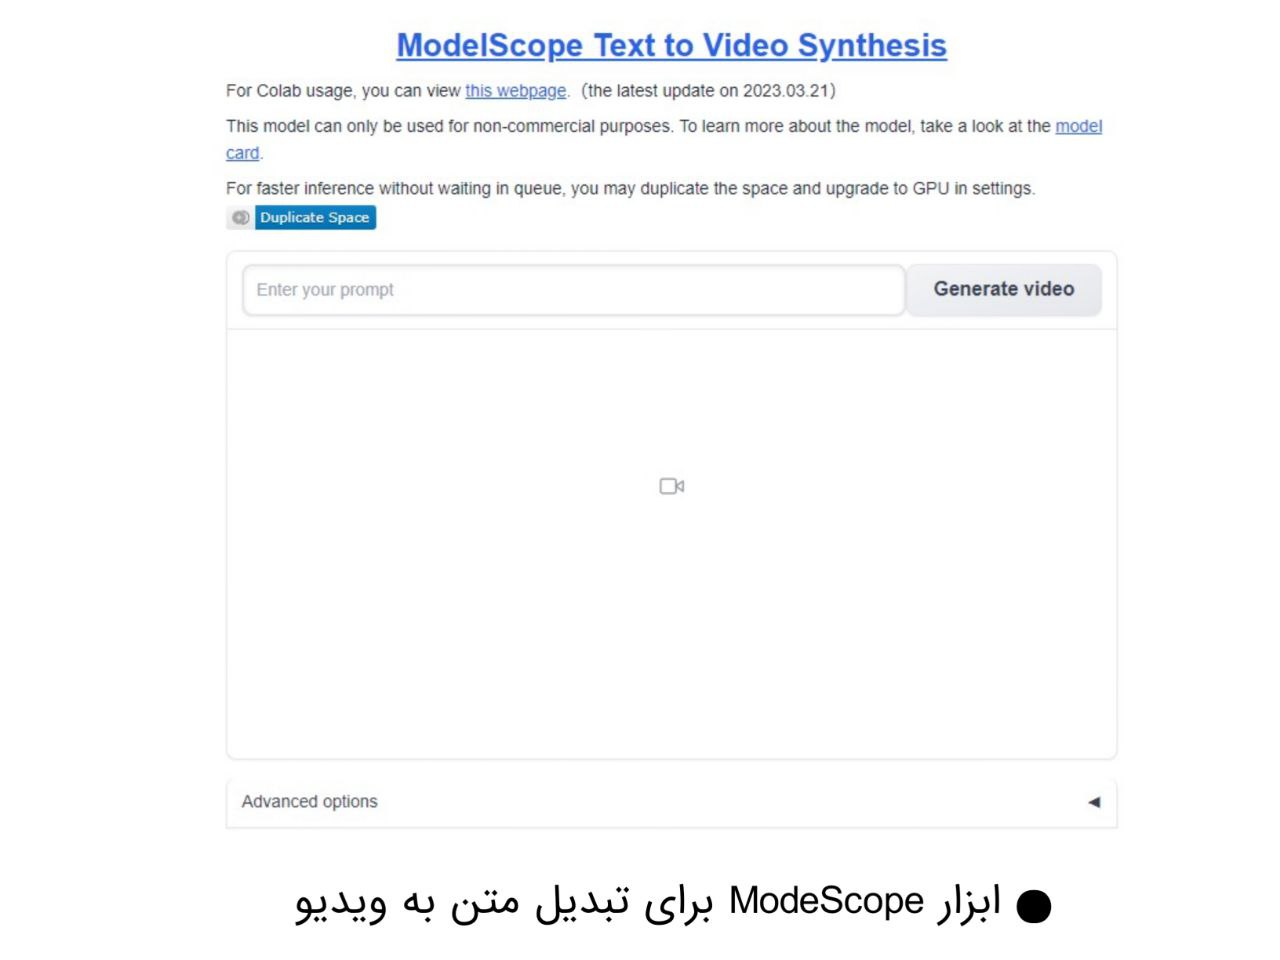 تبدیل متن به ویدیو با هوش مصنوعی با ابزار modelscope